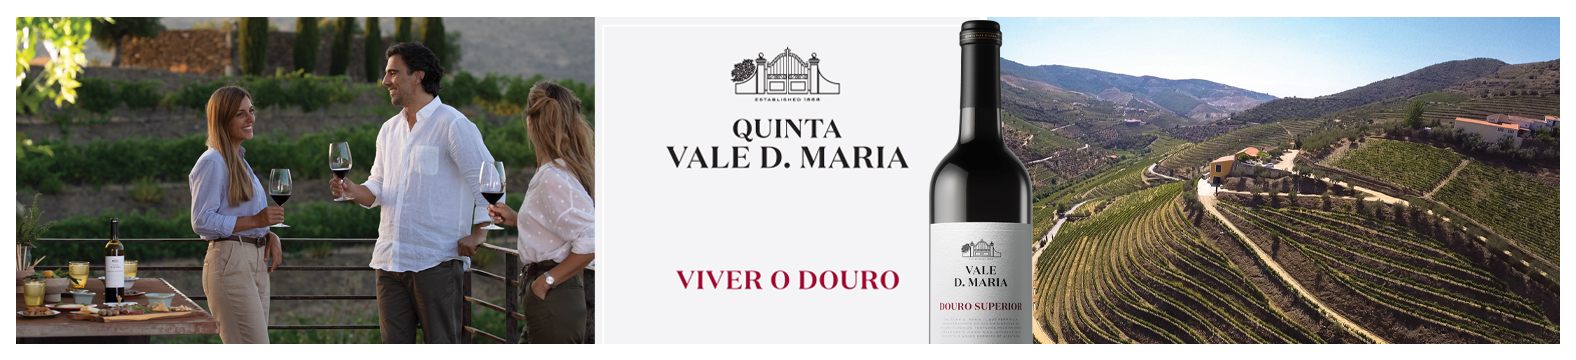 Quinta Vale D. Maria convida a “Viver o Douro”